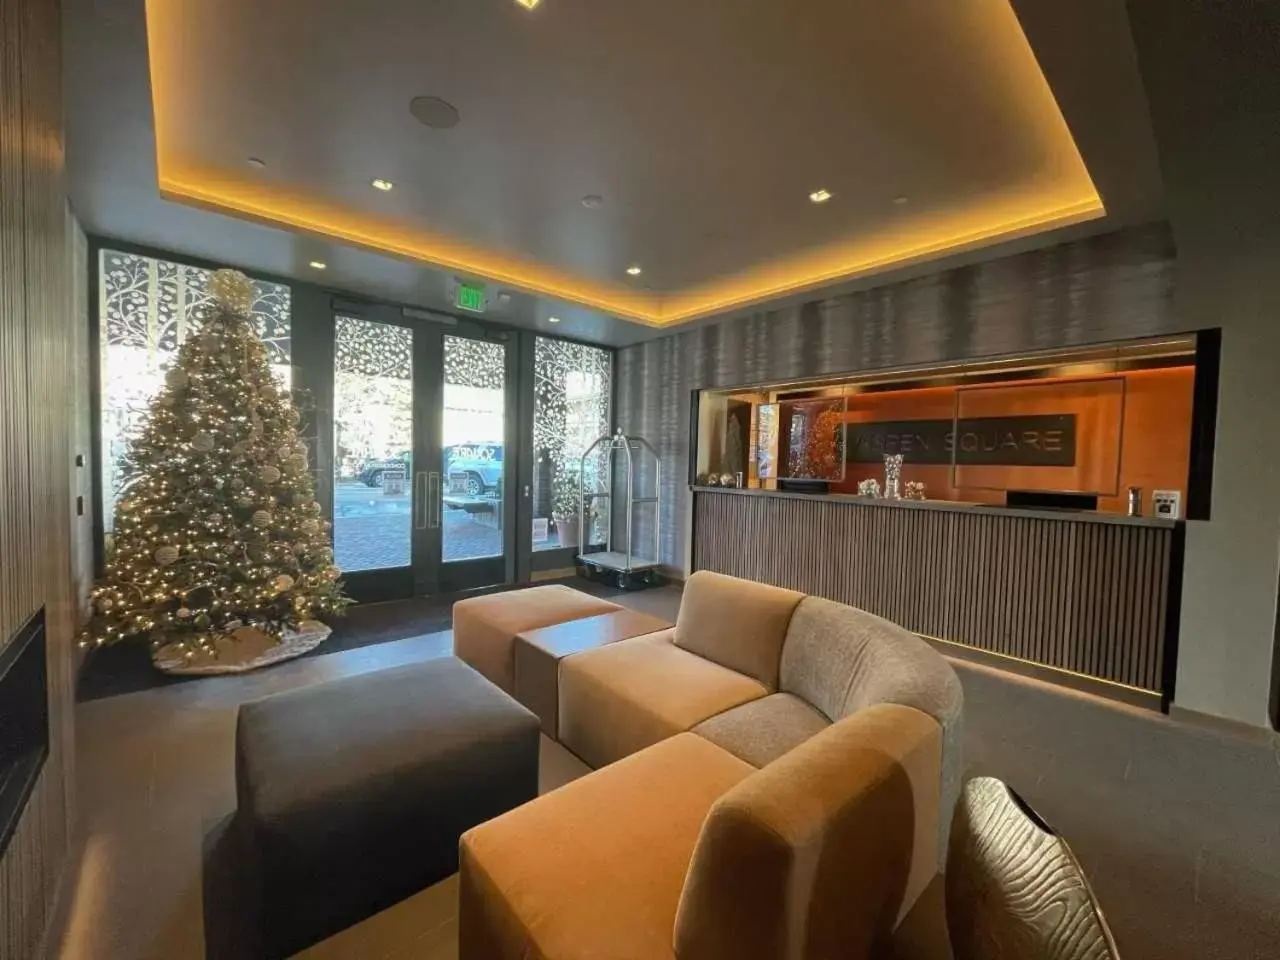 Lobby or reception in Aspen Square Condominium Hotel